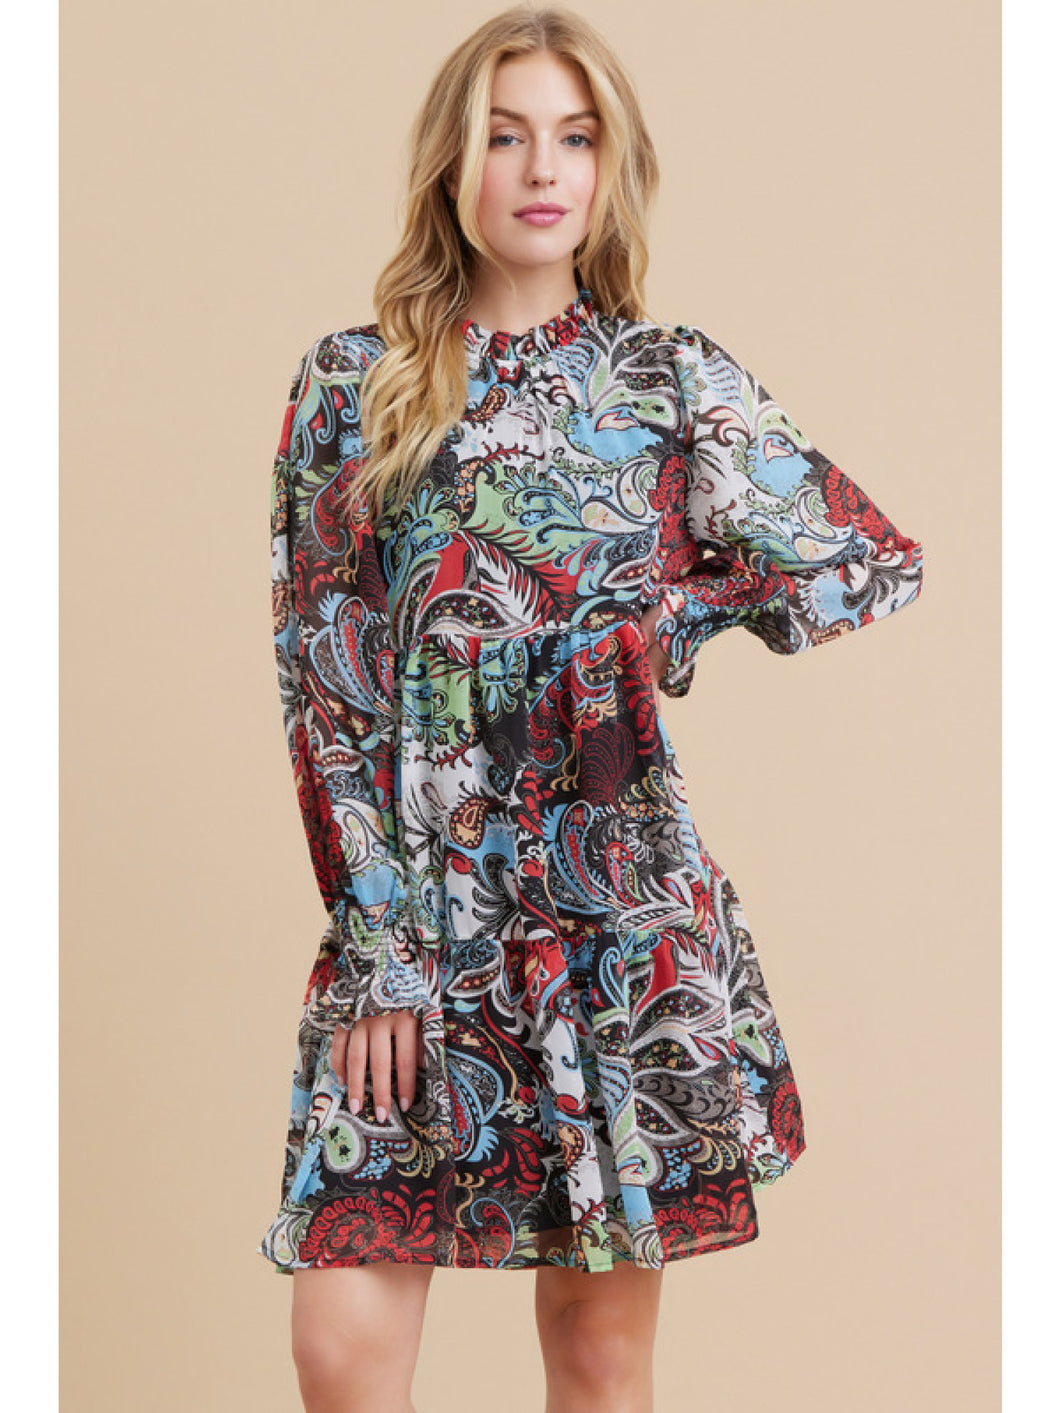 Paisley Print Chiffon Dress